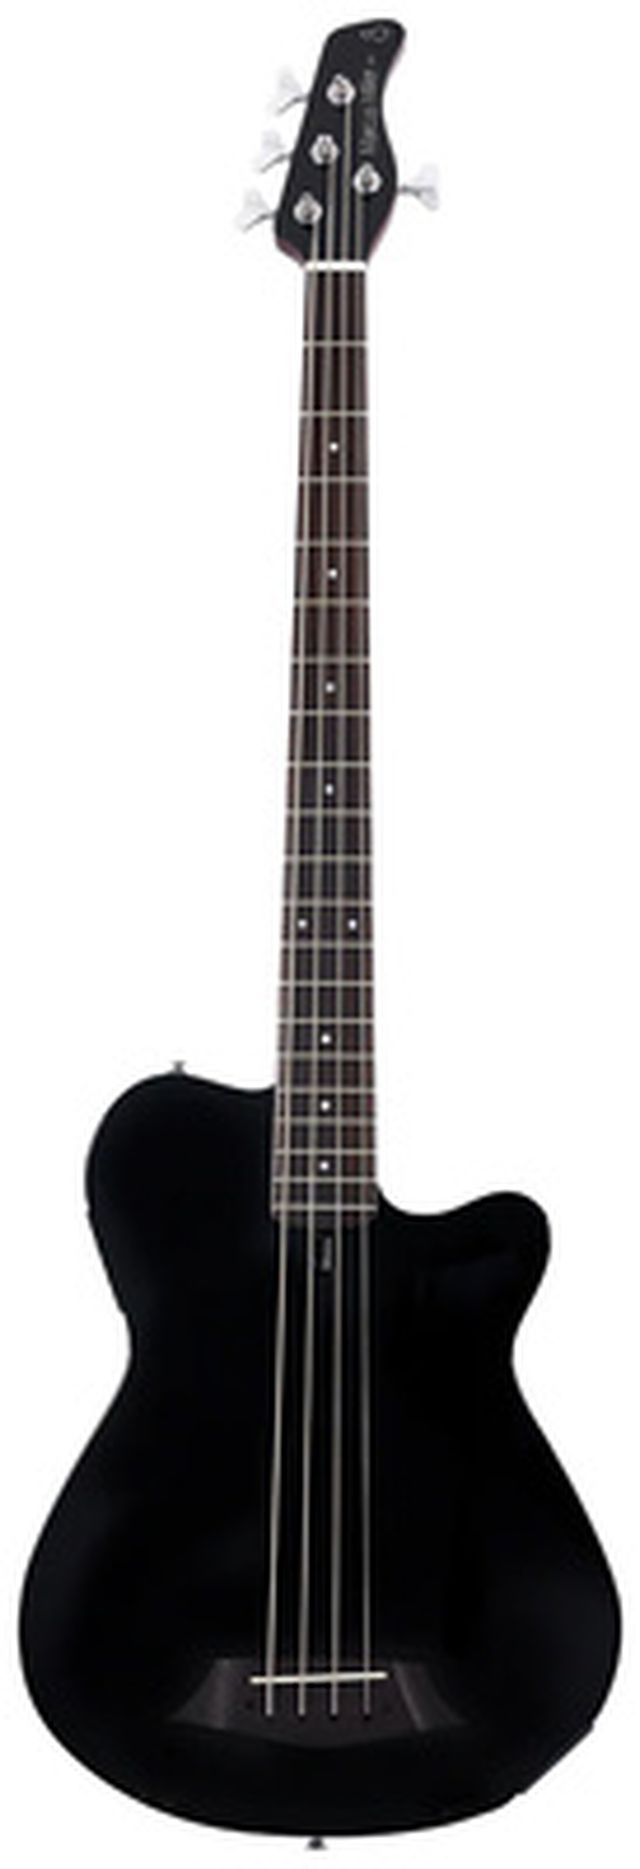 Marcus Miller GB5-4 Black